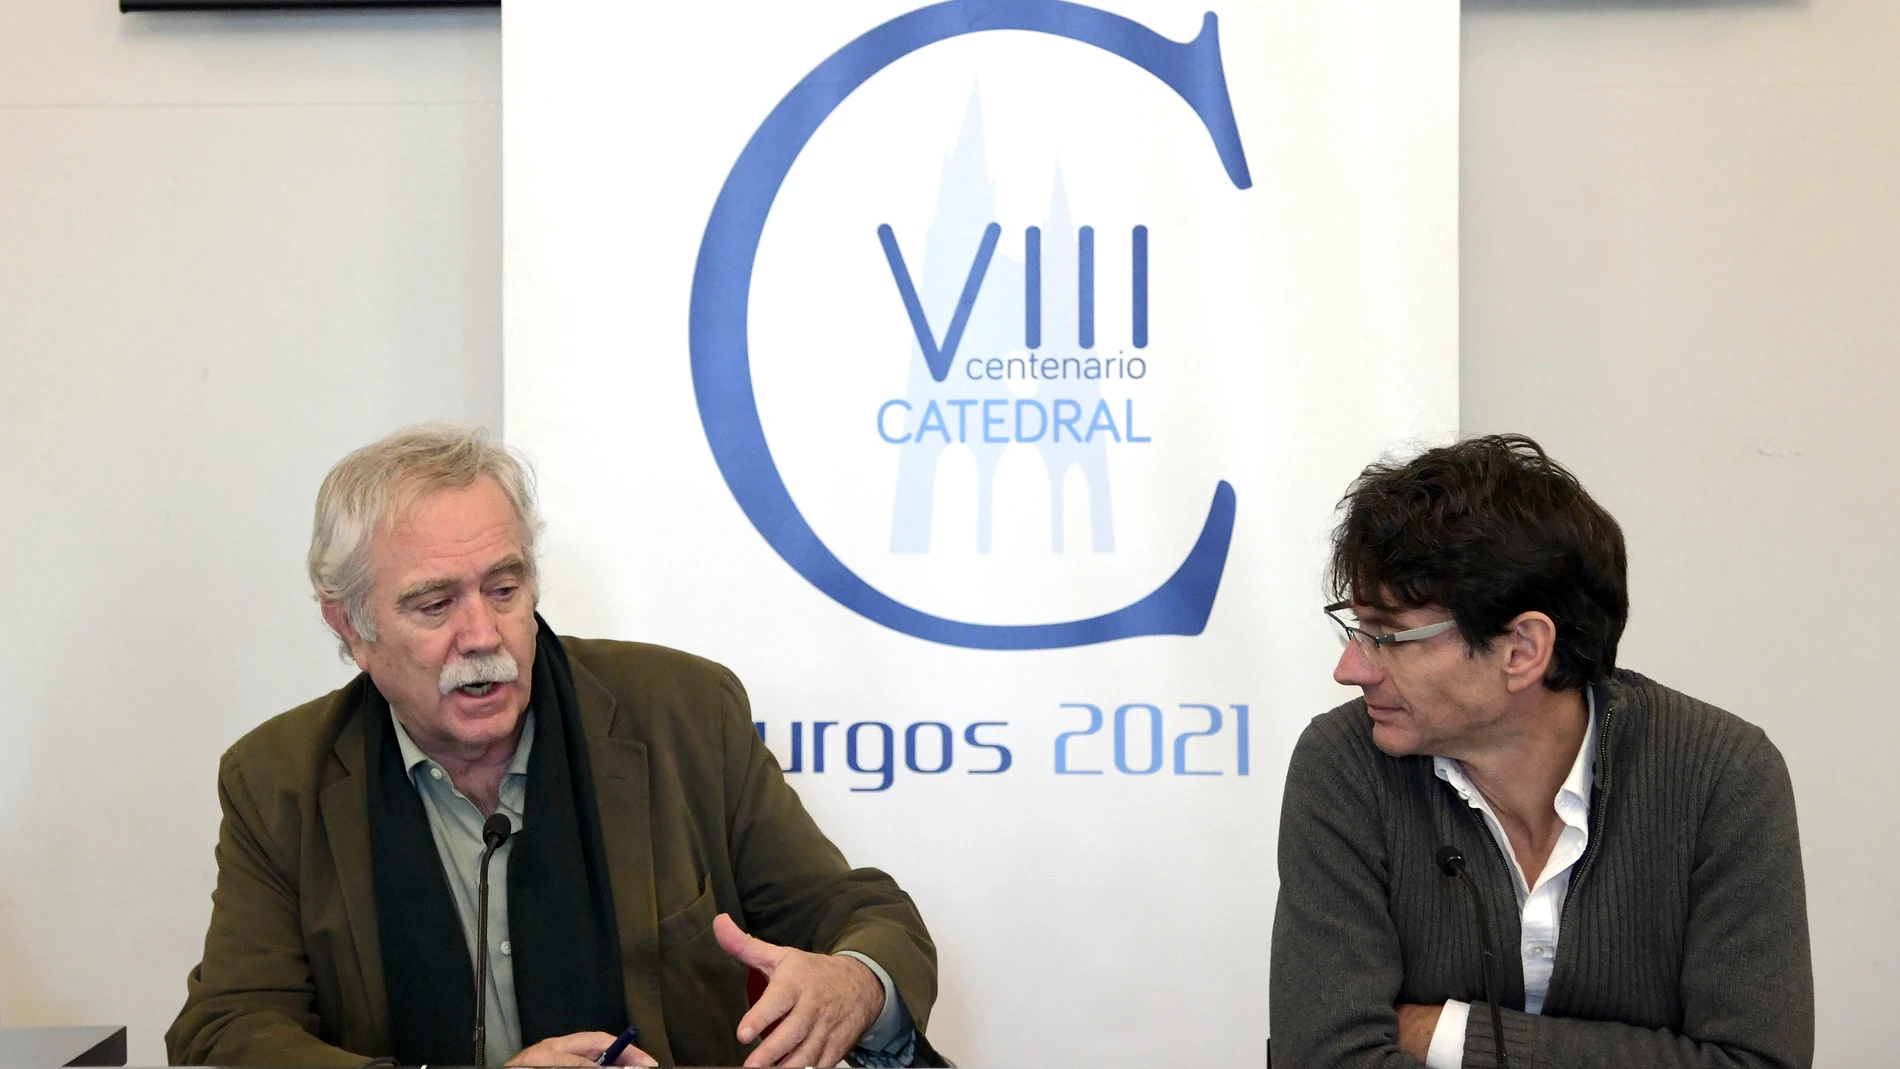 El coordinador del ciclo, Antonio Pérez Henares, y el presidente de la Asociación de Libreros de Burgos, Álvaro Manso, presentan el foro